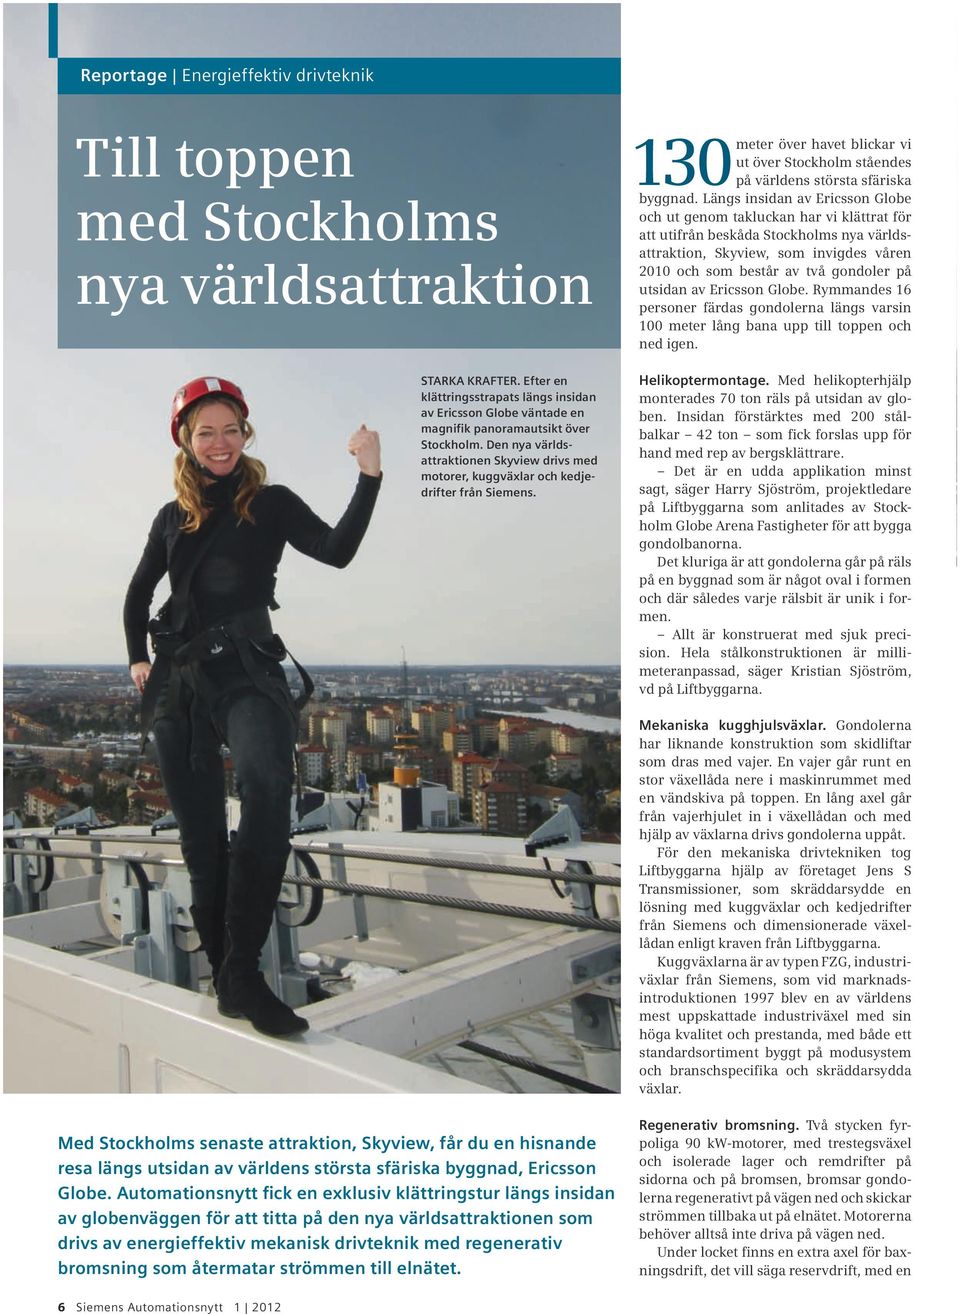 Den nya världsattraktionen Skyview drivs med motorer, kuggväxlar och kedjedrifter från Siemens. 130 meter över havet blickar vi ut över Stockholm ståendes på världens största sfäriska byggnad.